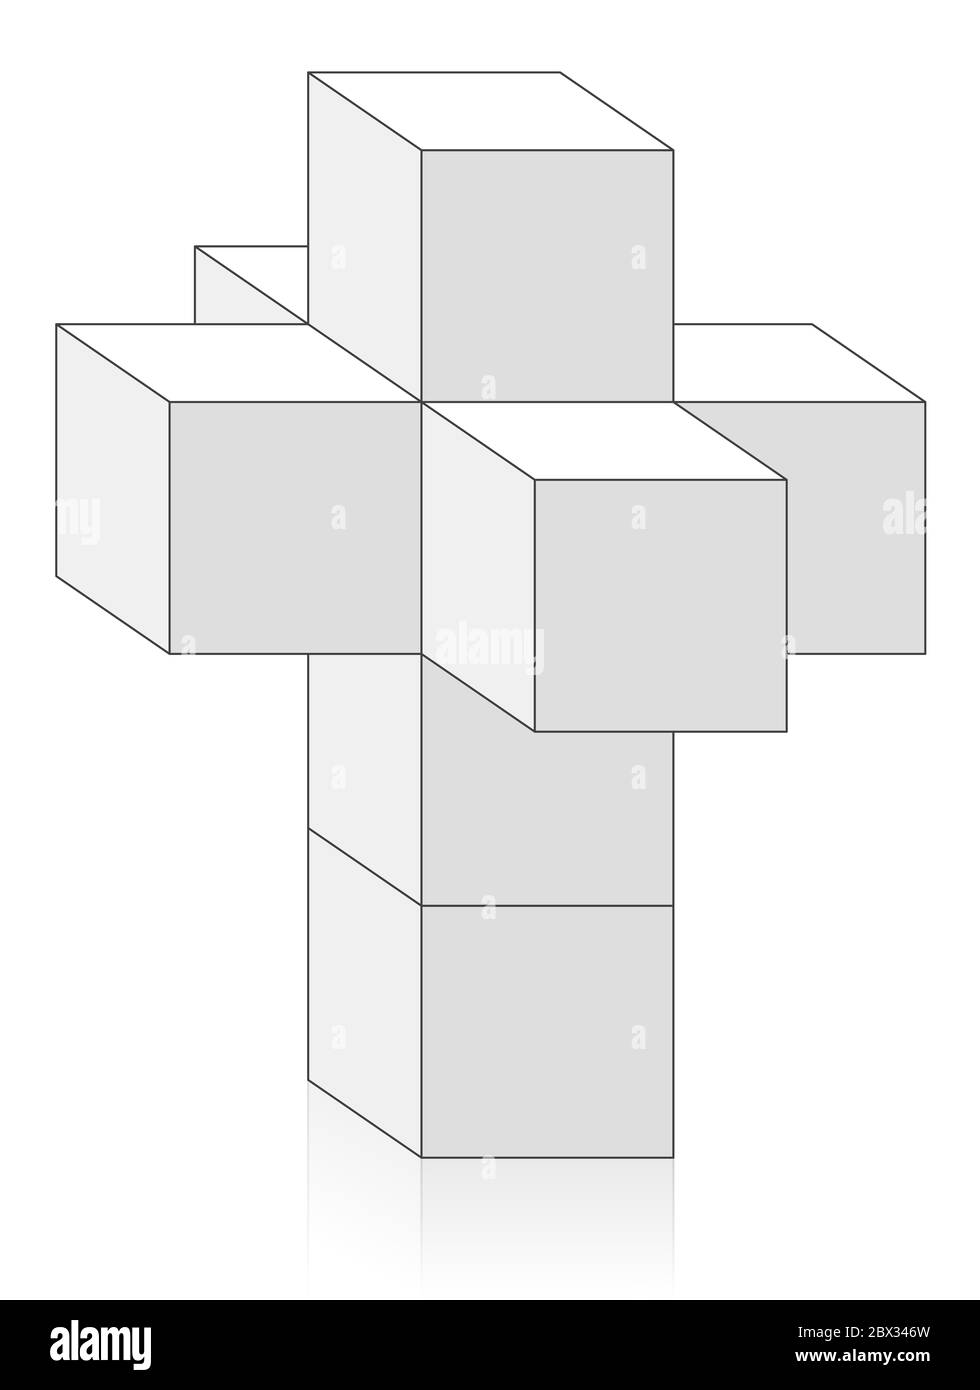 Tesseract, Hypercubus u Octachoron plegados en 4ª dimensión para obtener una red 4D Hypercube, un problema matemático y geométrico especial con ocho cubos. Foto de stock